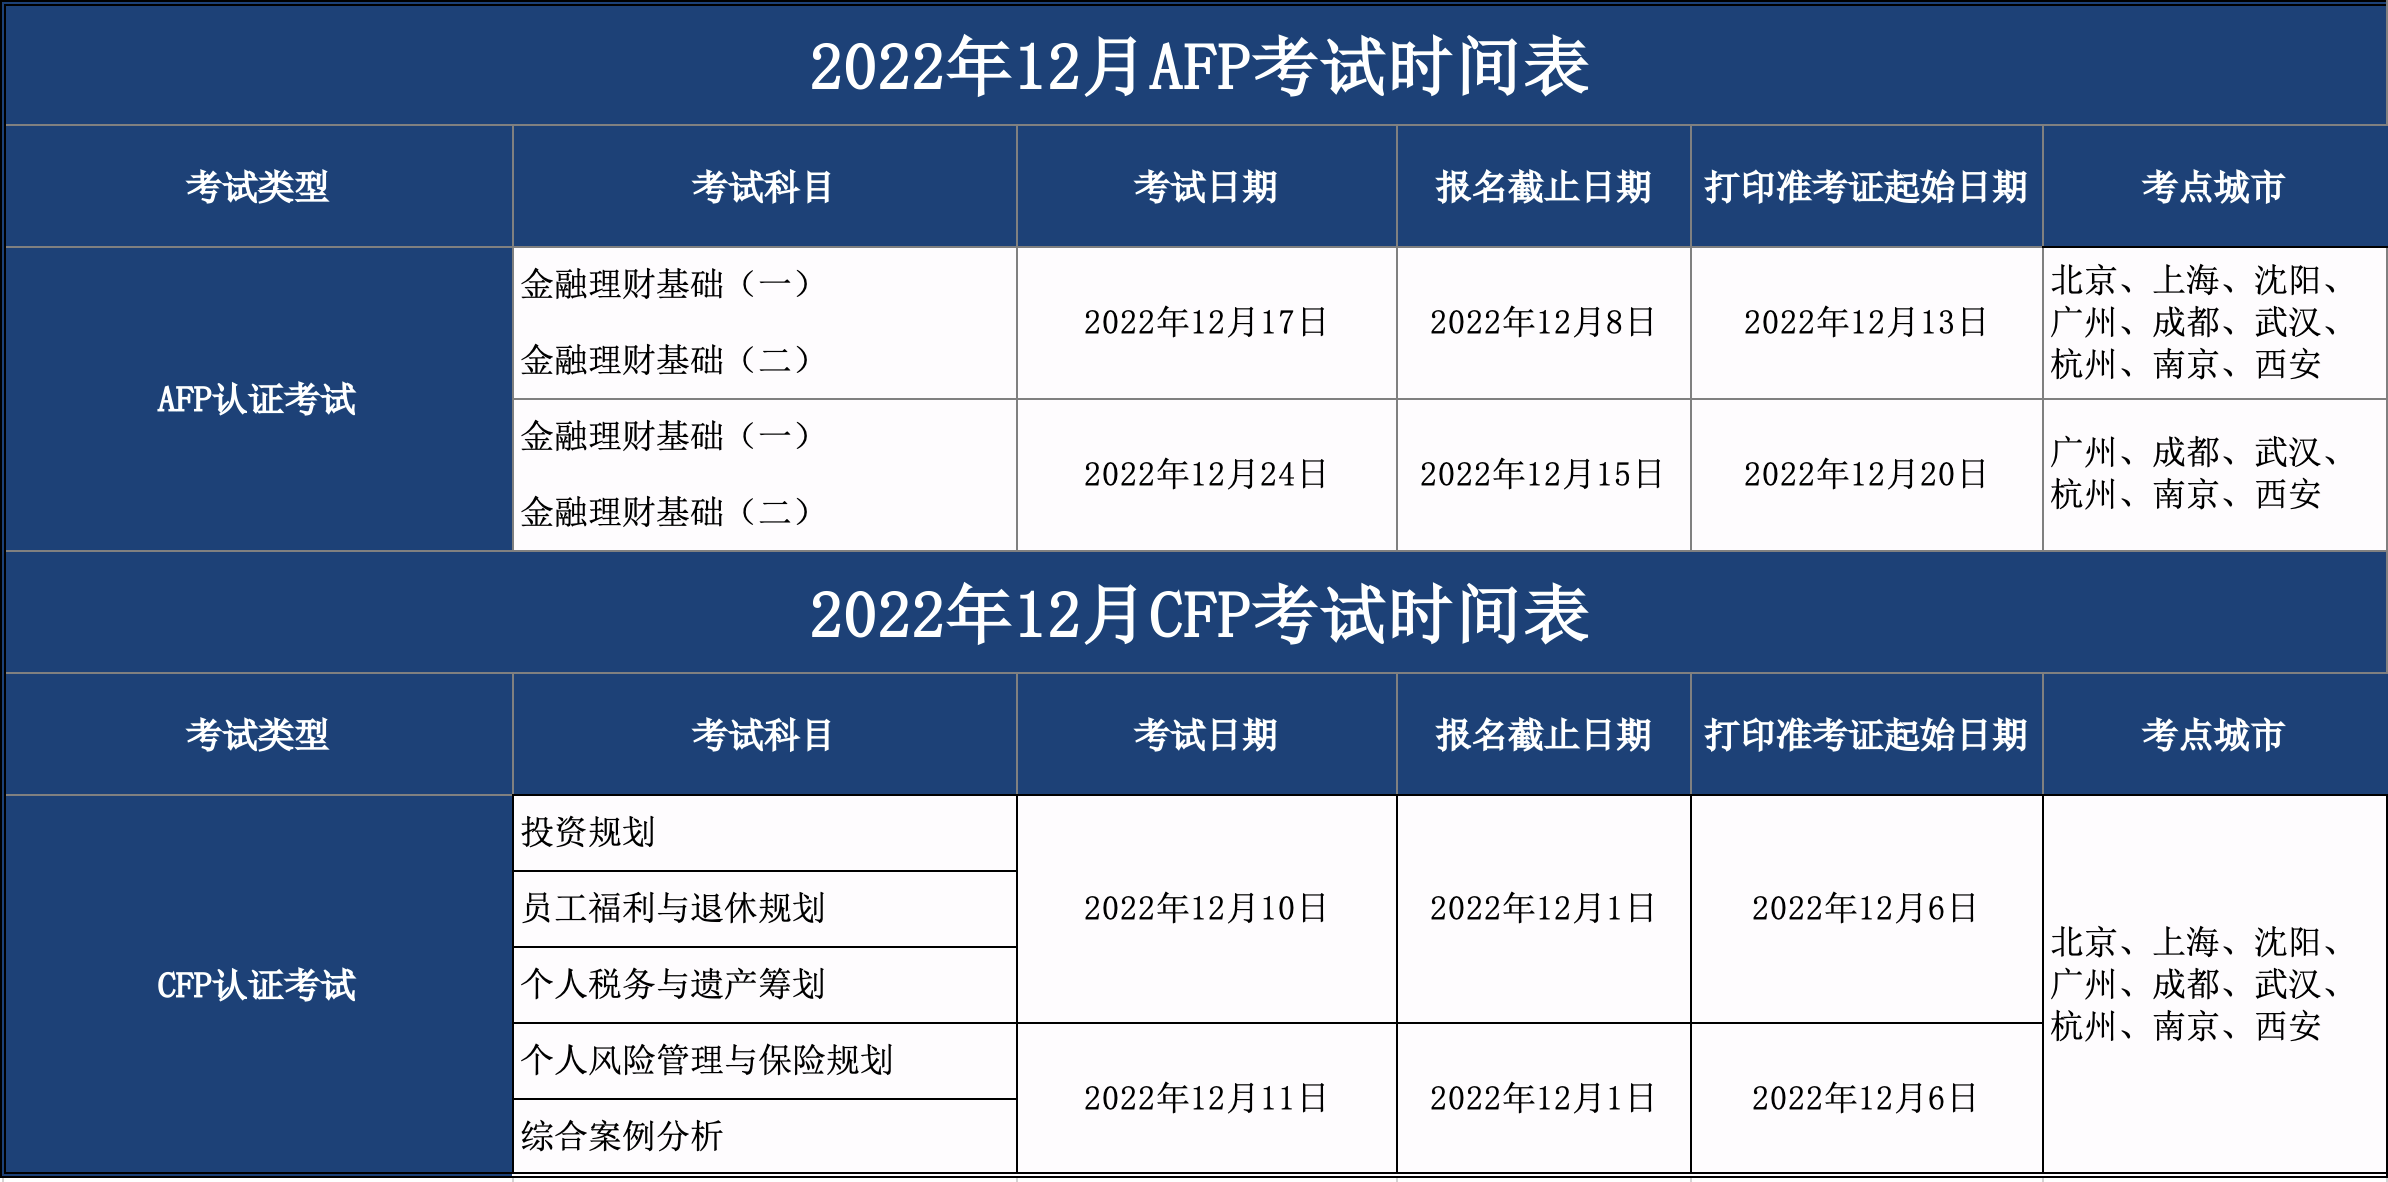 2022年12月CFP/AFP考试时间表